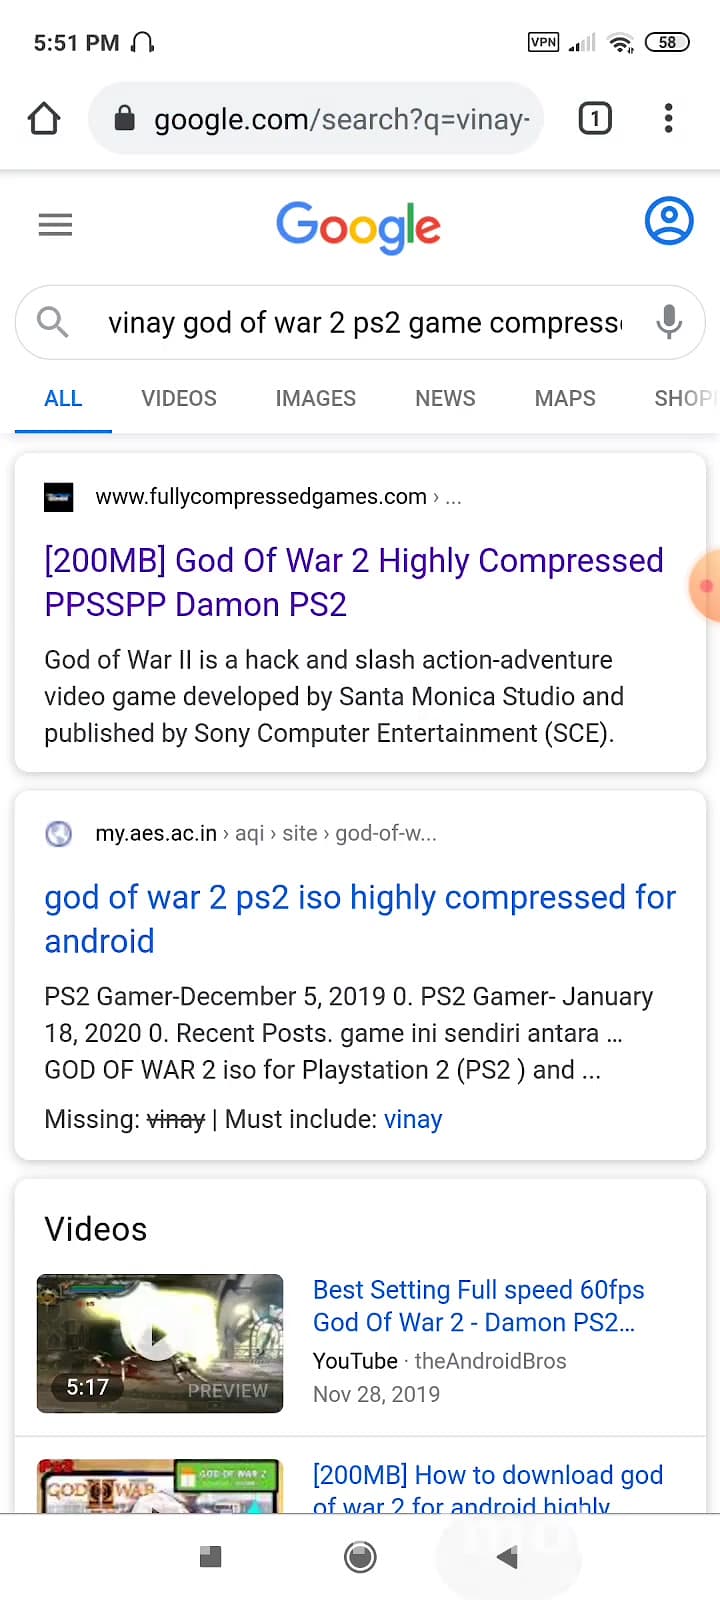 آموزش نصب بازی خدای جنگ ۲ برای اندروید / GOD of WAR 2